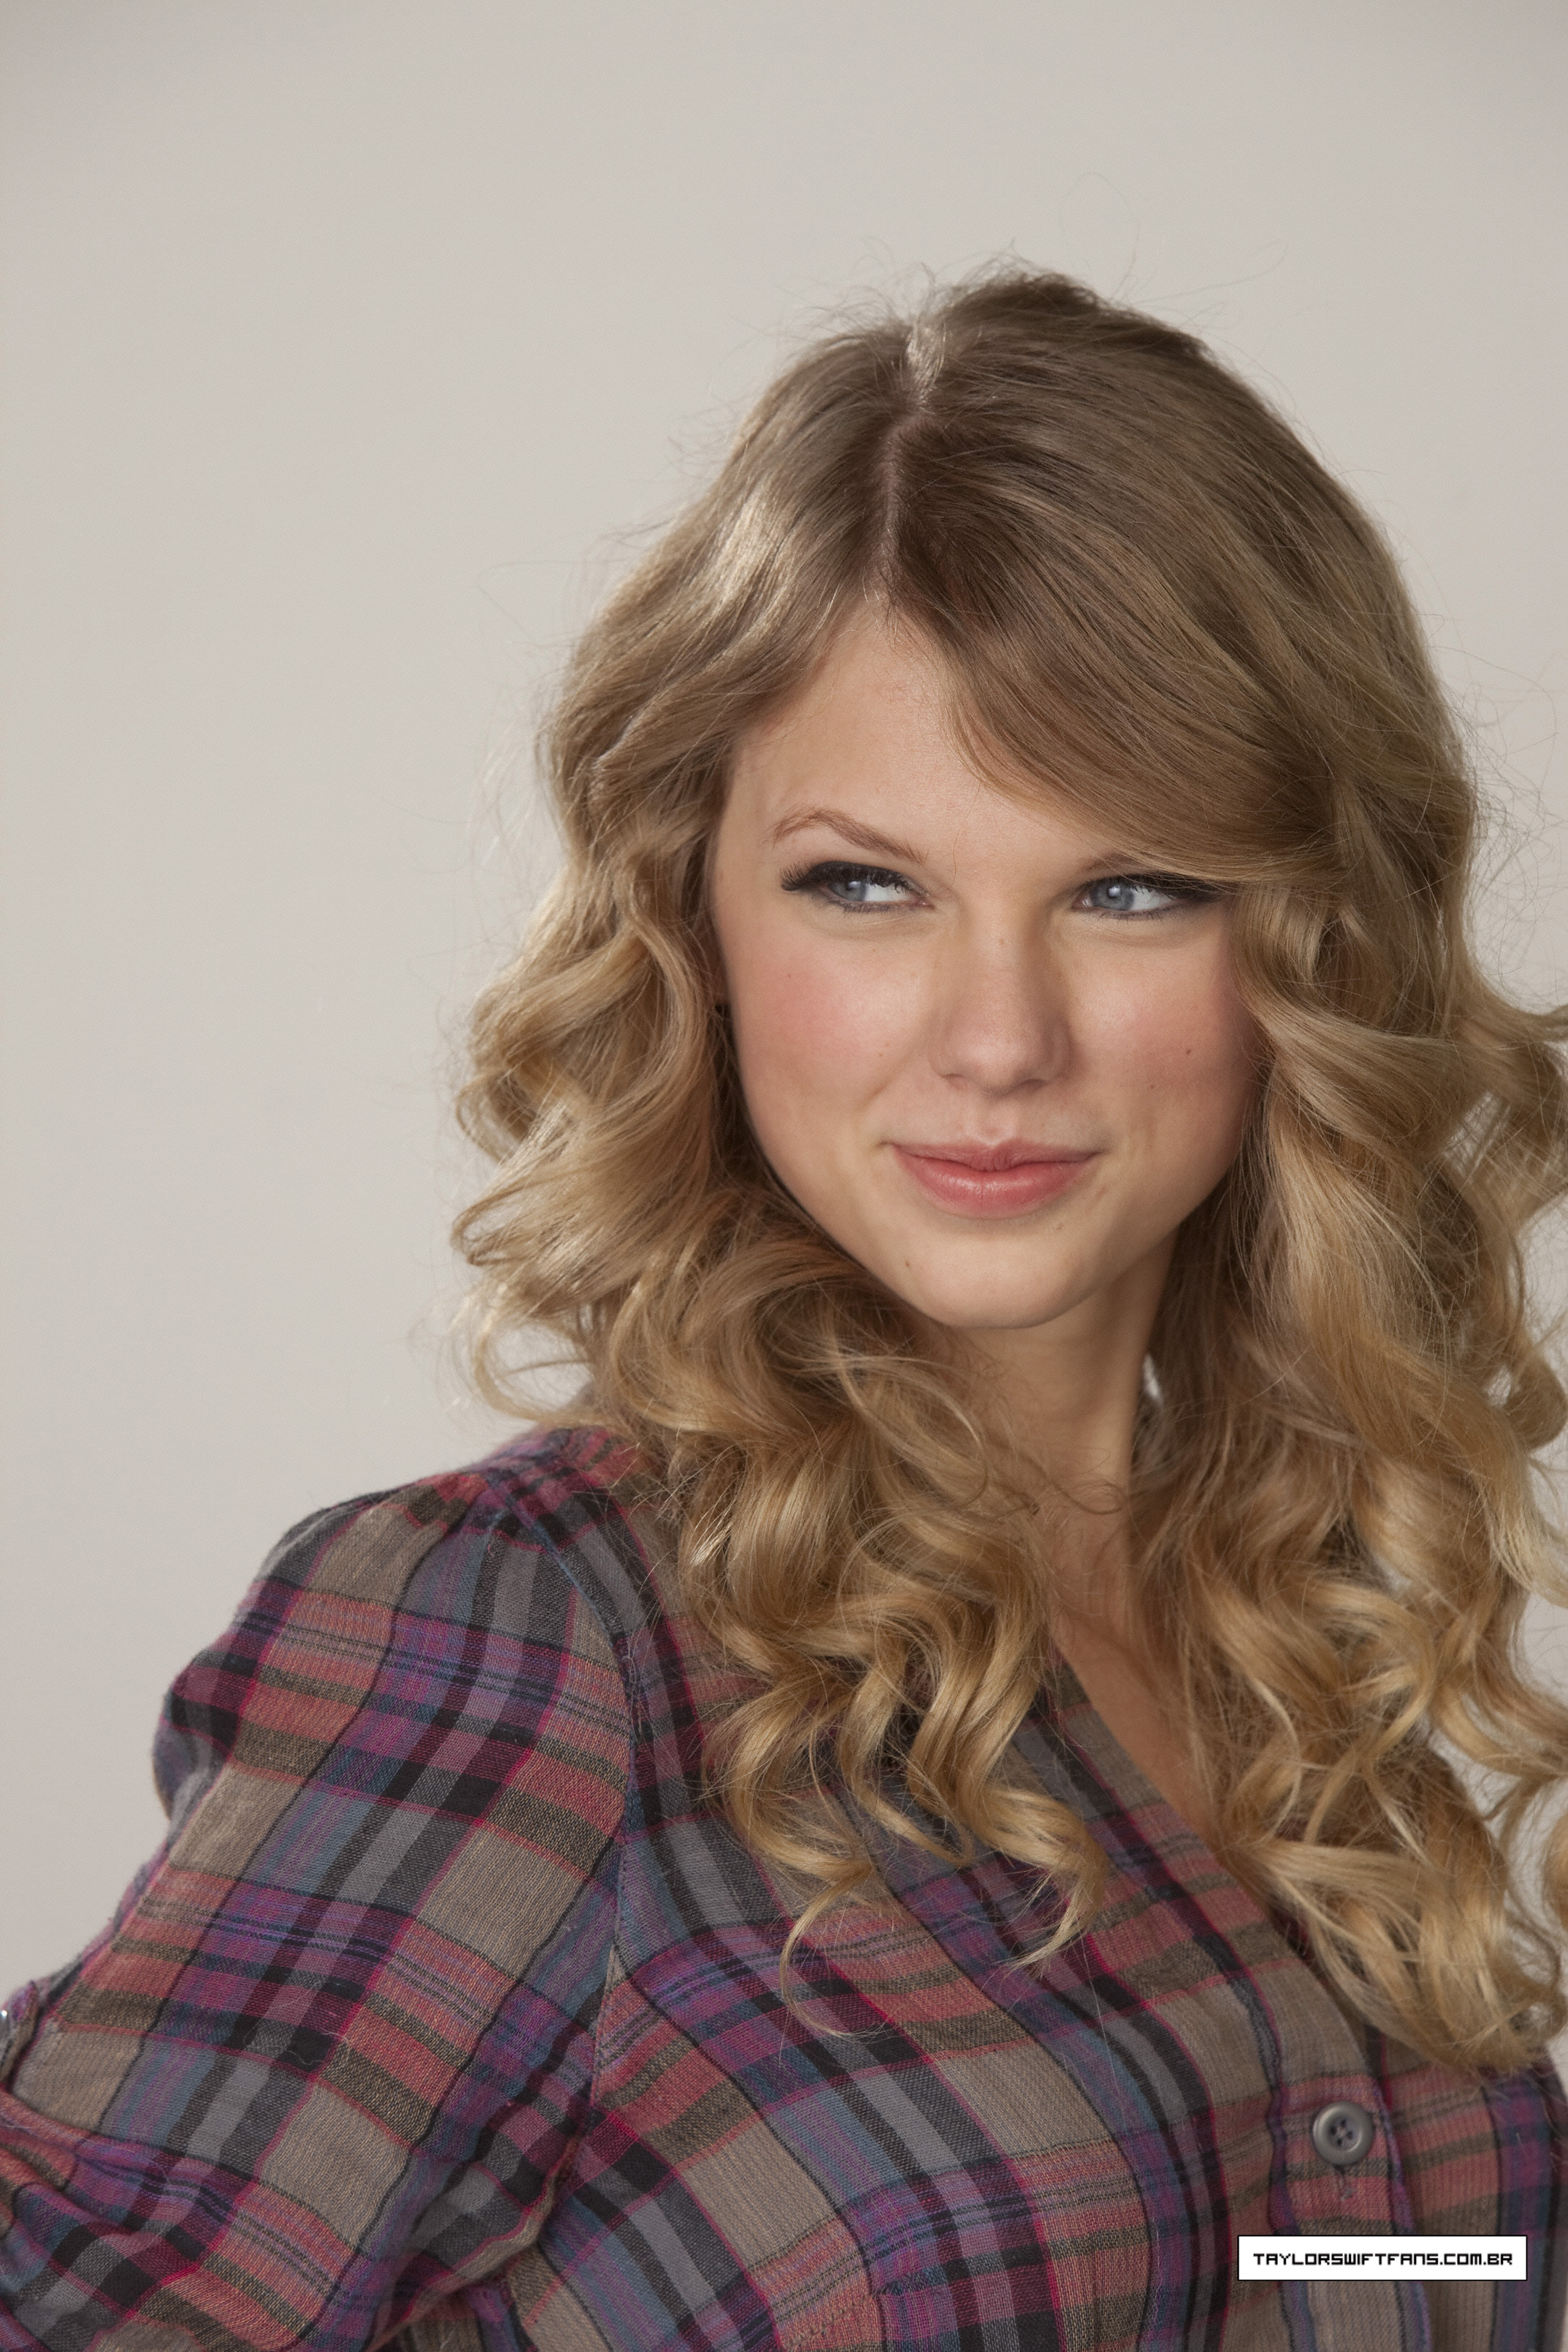 blondes, women, Taylor Swift, singers - desktop wallpaper